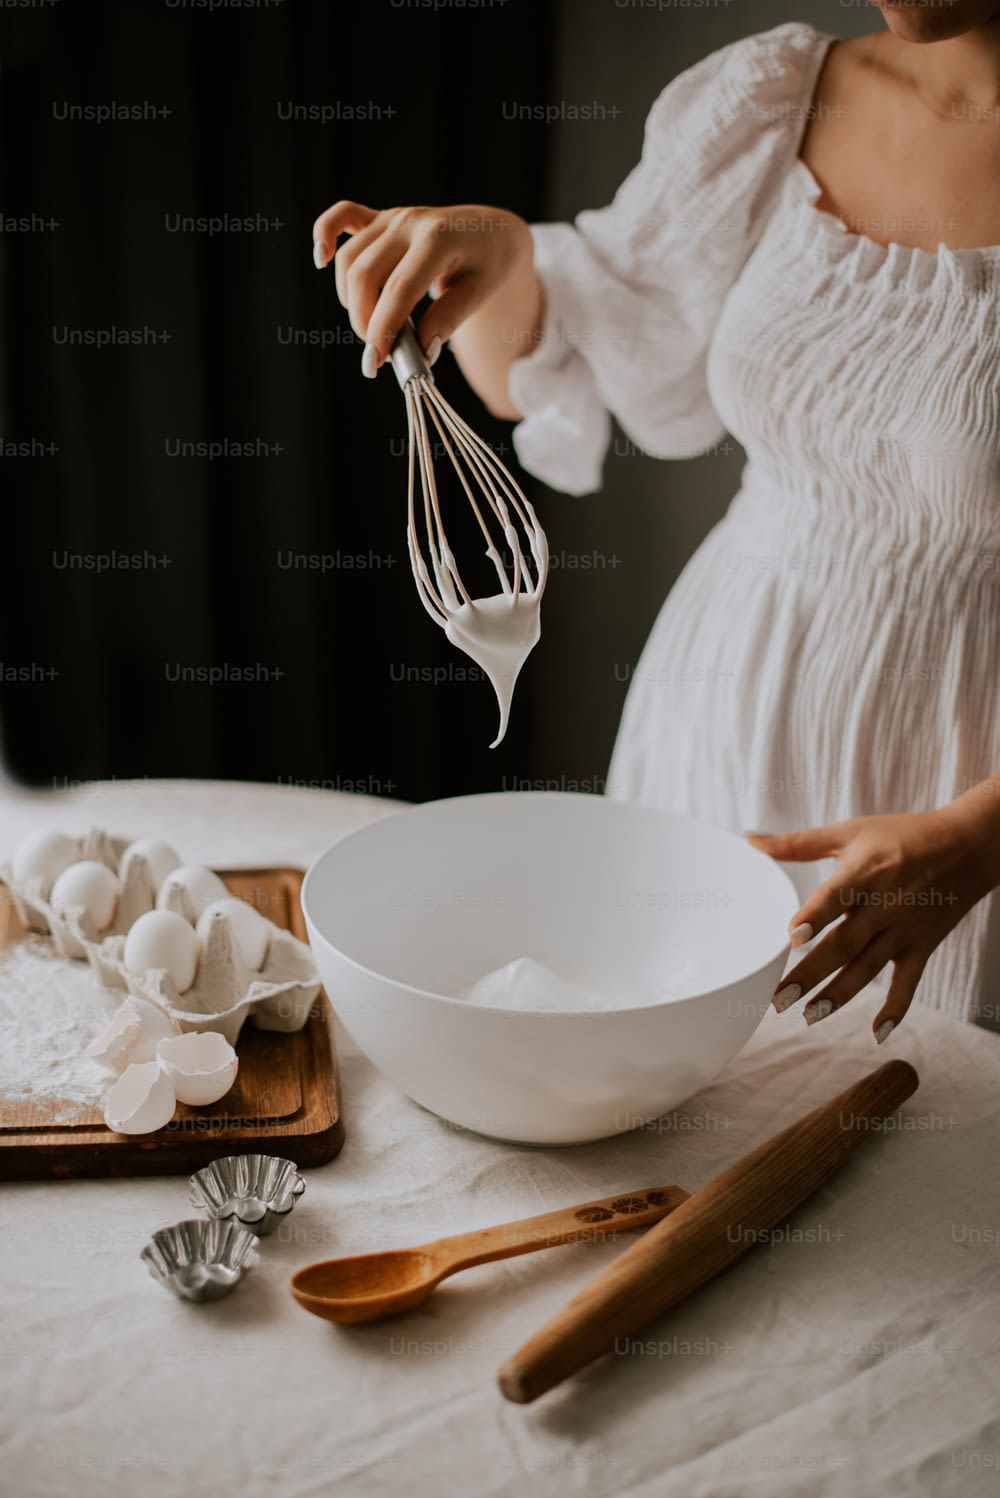 하얀 드레스를 입은 여자가 그릇에 달걀을 휘젓는다